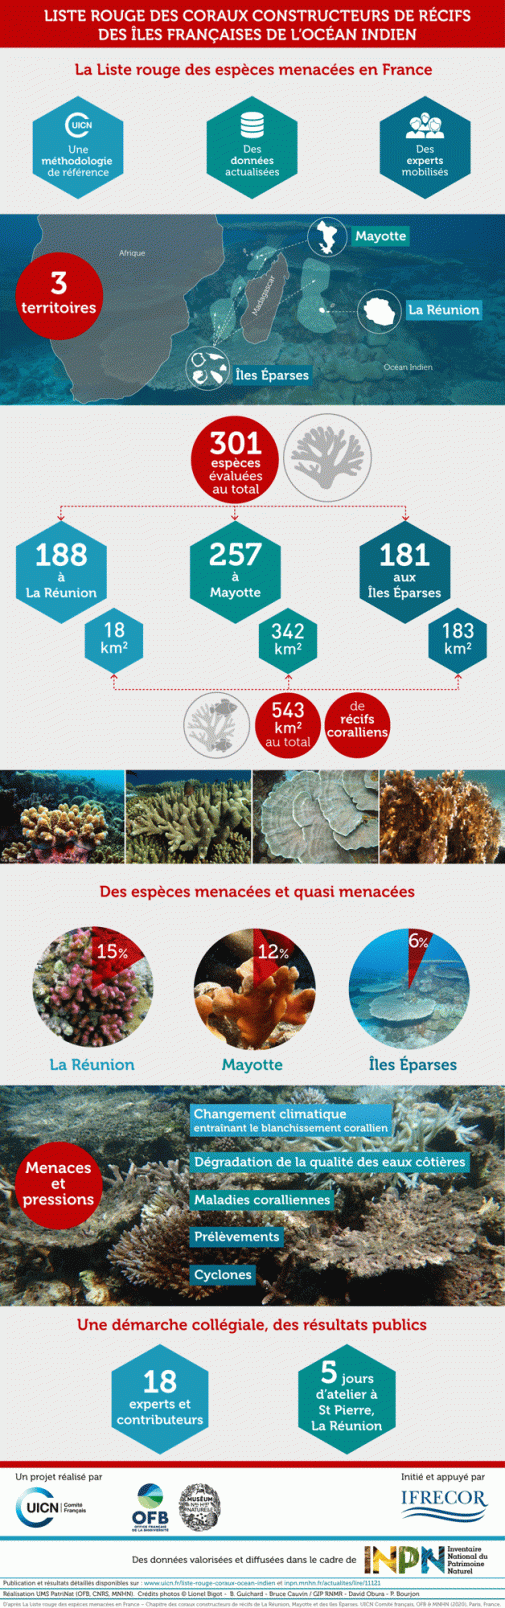 Infographie Liste rouge des coraux de l'océan Indien 